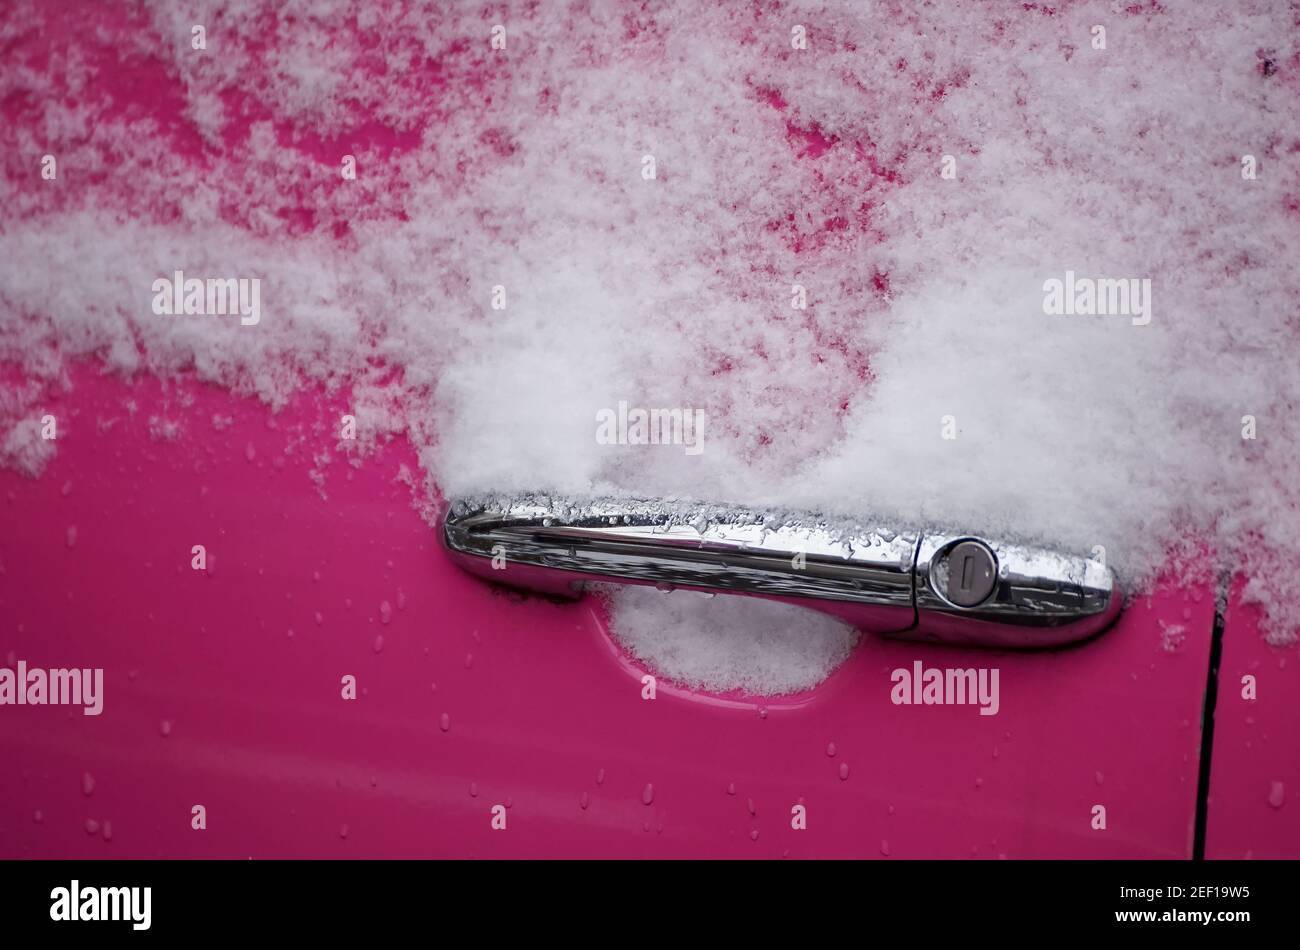 Bukarest, Rumänien - 17. März 2021: Der Türgriff eines rosafarbenen Autos ist gefroren und voller Schnee. Stockfoto